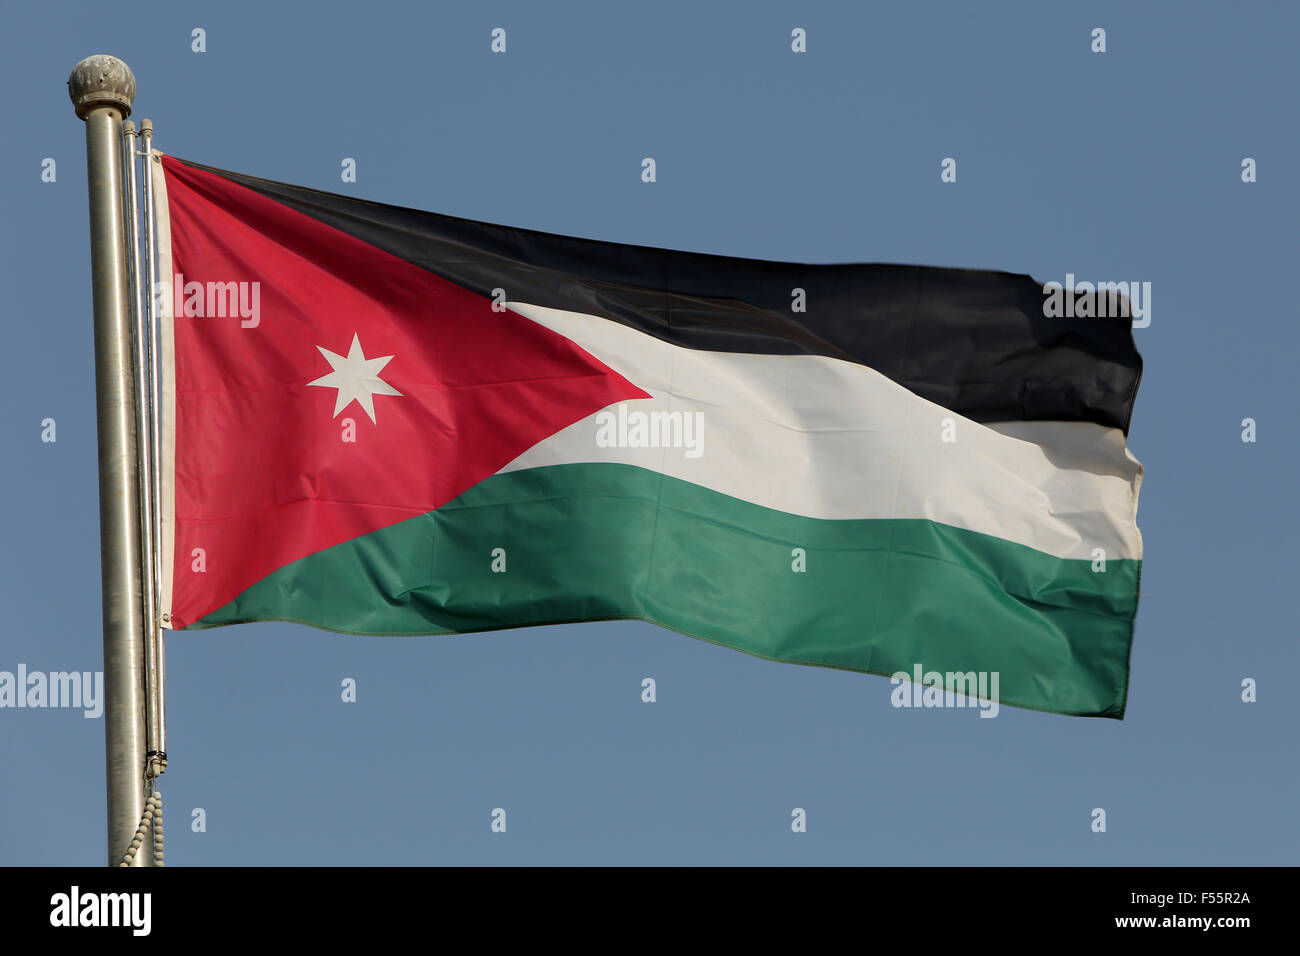 03.03.2015, Doha, Doha, Qatar - la bandiera nazionale della Giordania. 00S150303D603CAROEX.JPG - non per la vendita in G E R M A N Y, A U S T R I A, S W I T Z e R L A N D [modello di rilascio: non applicabile, la proprietà di rilascio: NO (c) caro agenzia fotografica / sorge, http://www.caro-images.pl, info@carofoto.pl - nel caso di utilizzo di foto per non-scopi giornalistici, siete pregati di contattare l'Agenzia - la foto è soggetto a royalty!] Foto Stock